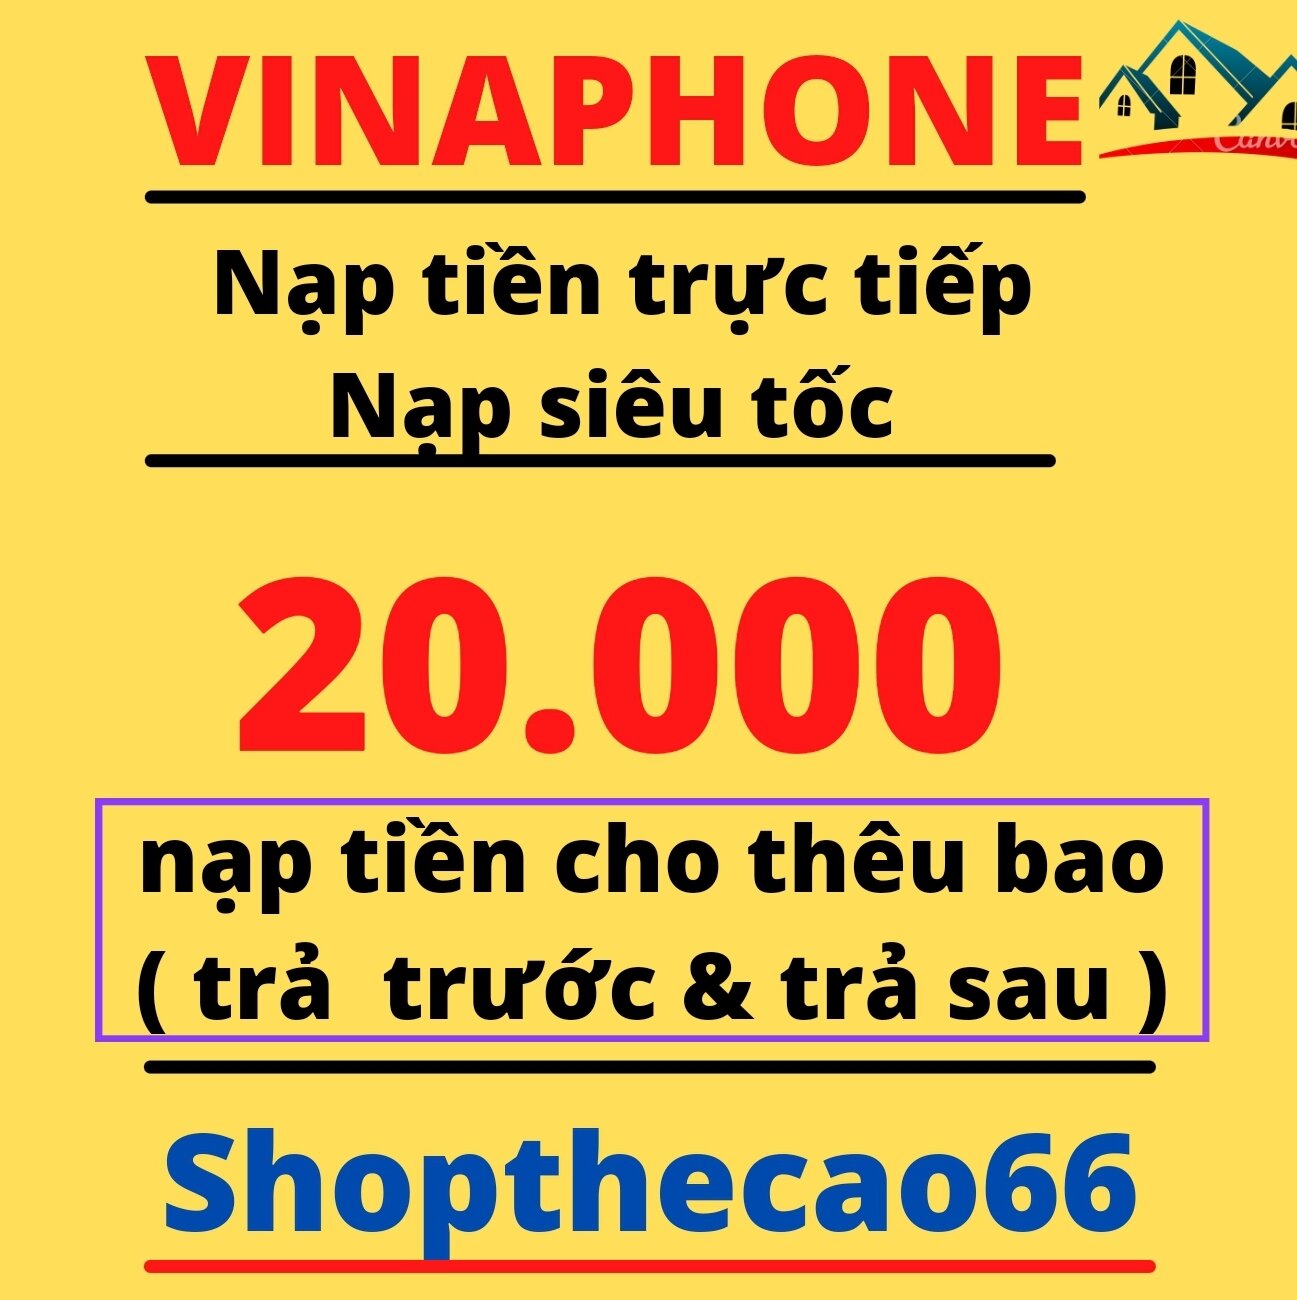 Nạp thẻ Vinaphone 20.000 (  áp dụng nạp cho thêu bao trả trước & trả sau ) ( không cần otp ) ( nạp trực tiếp vào số điện thoại ) - có nhận khuyến mãi từ nhà mạng